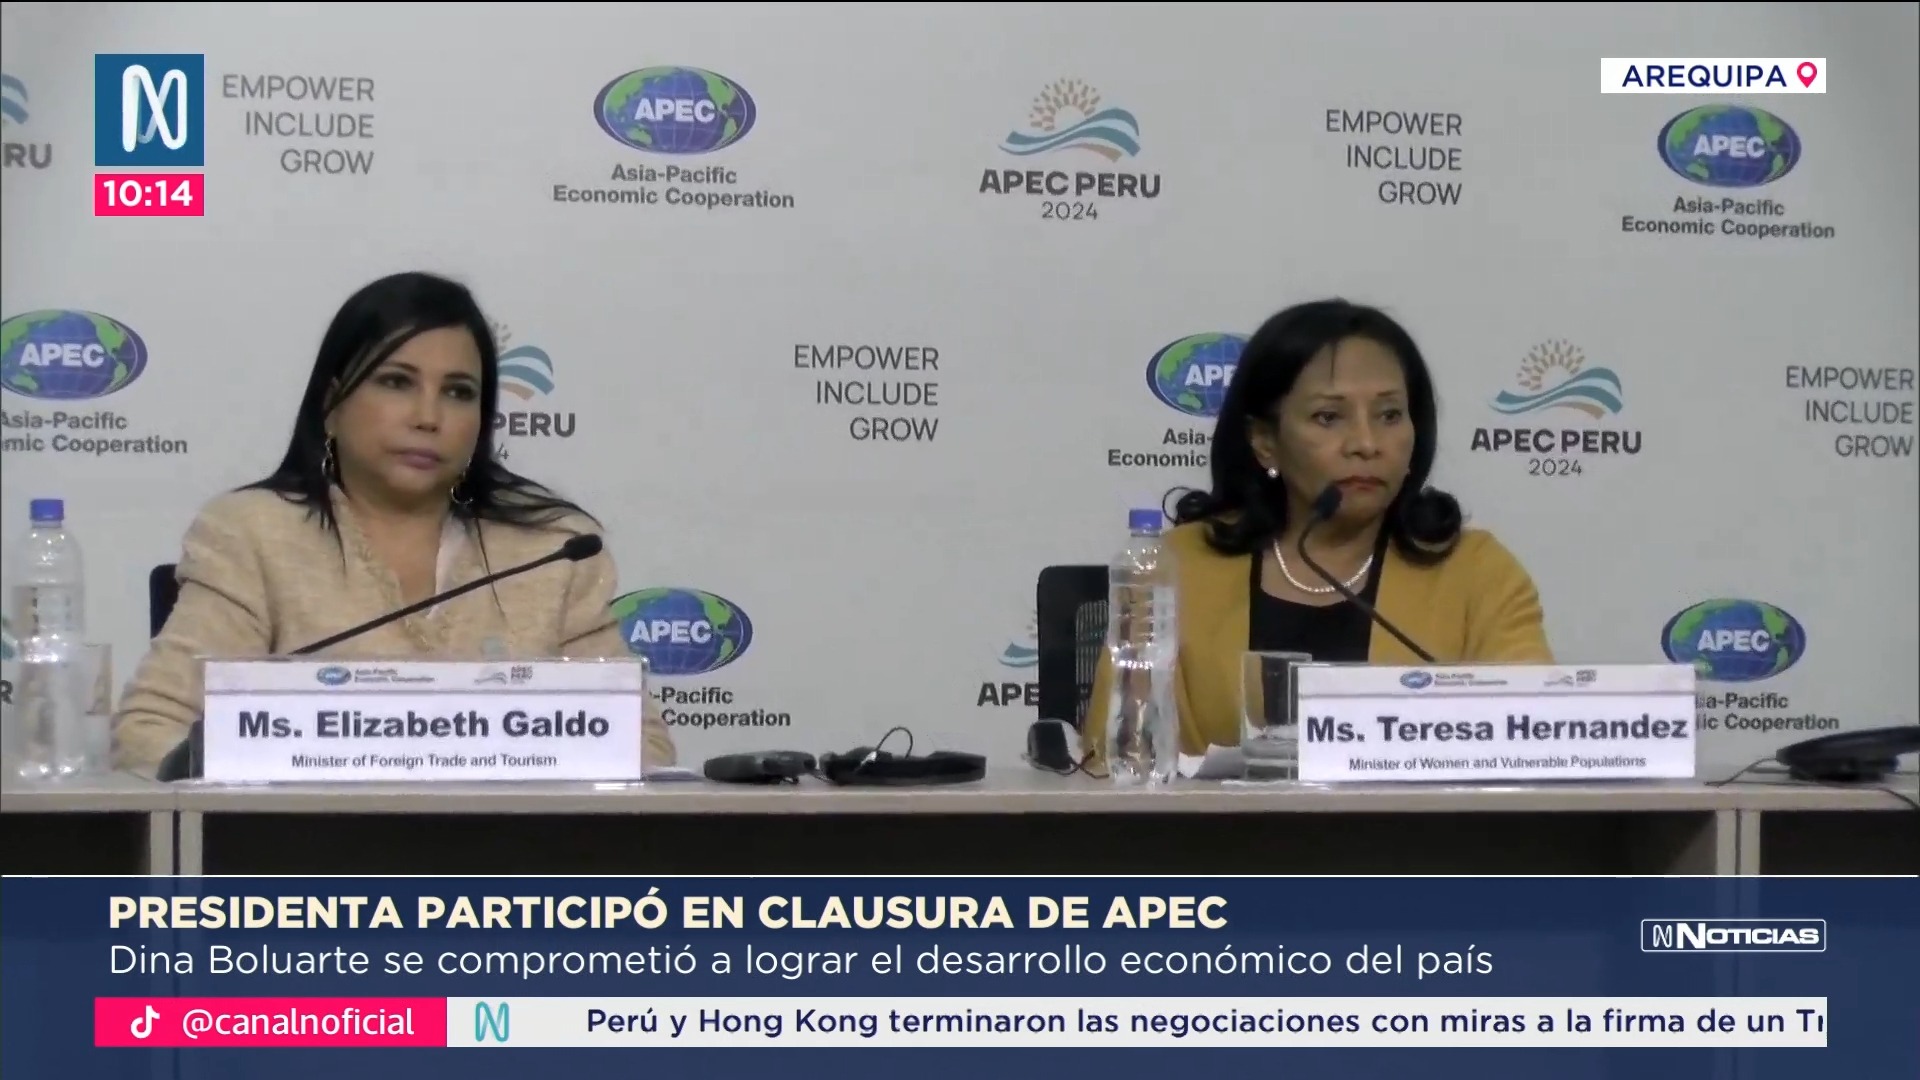 Presidenta Dina Boluarte participó en clausura de APEC